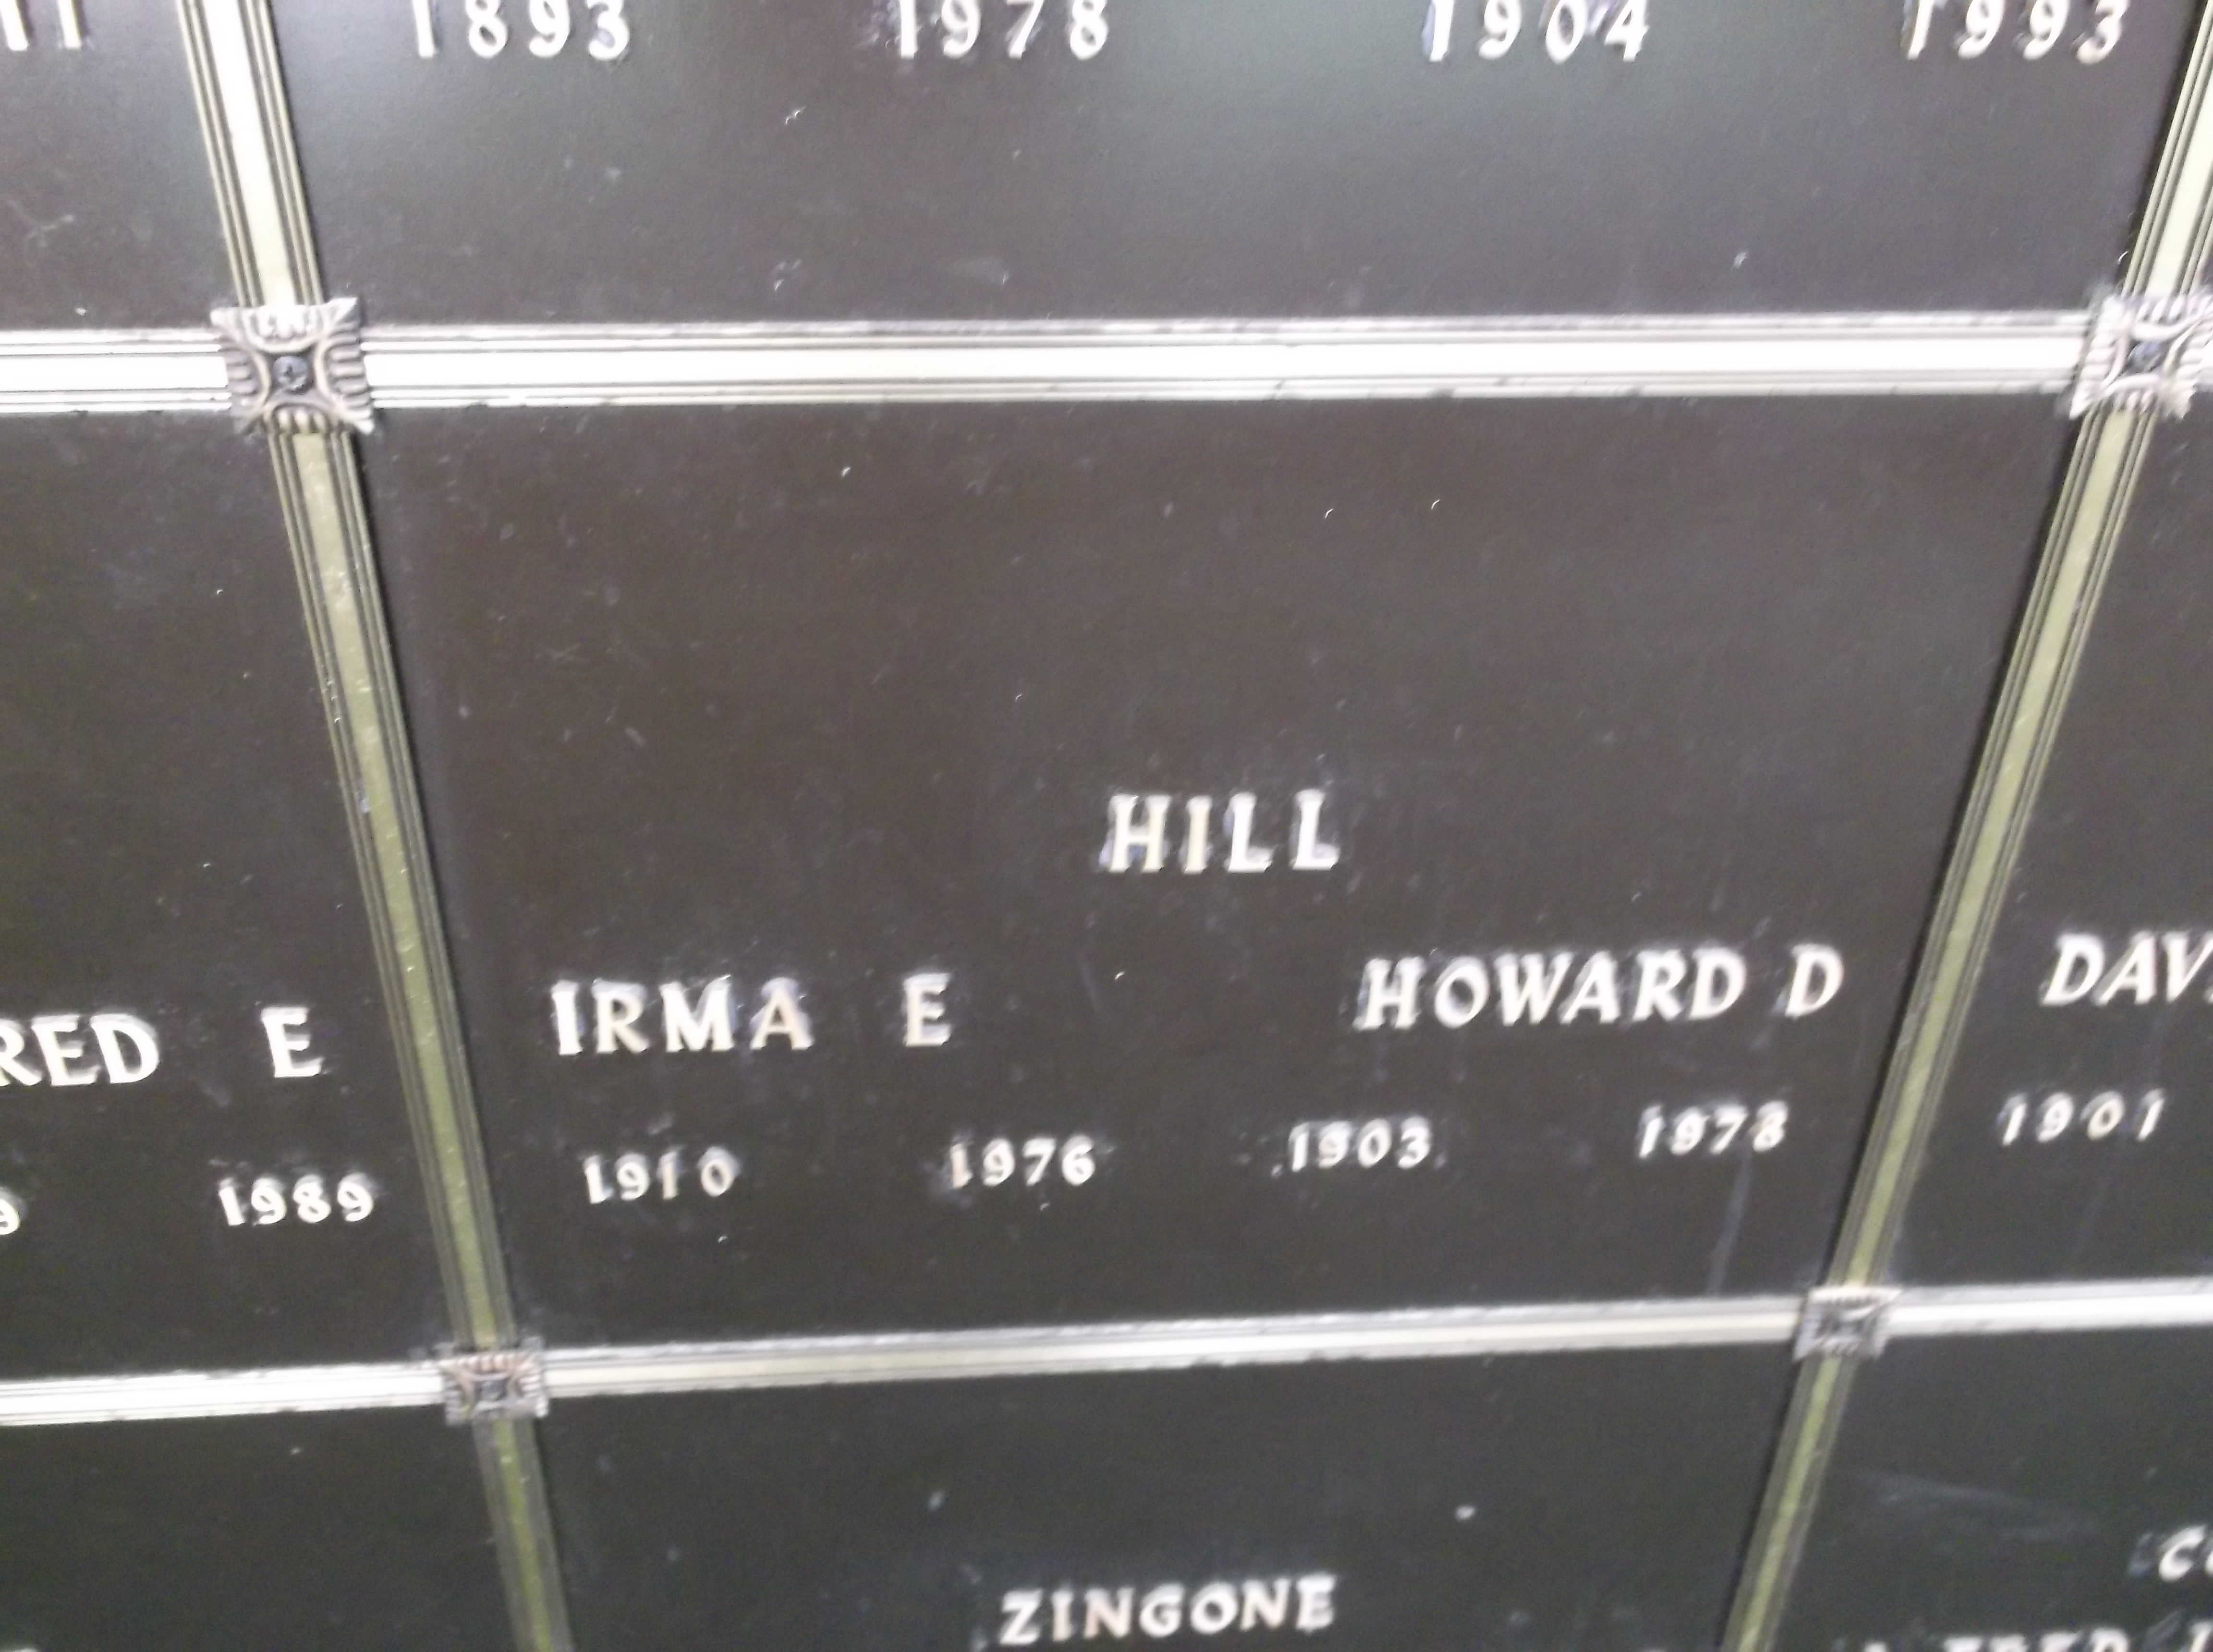 Irma E Hill